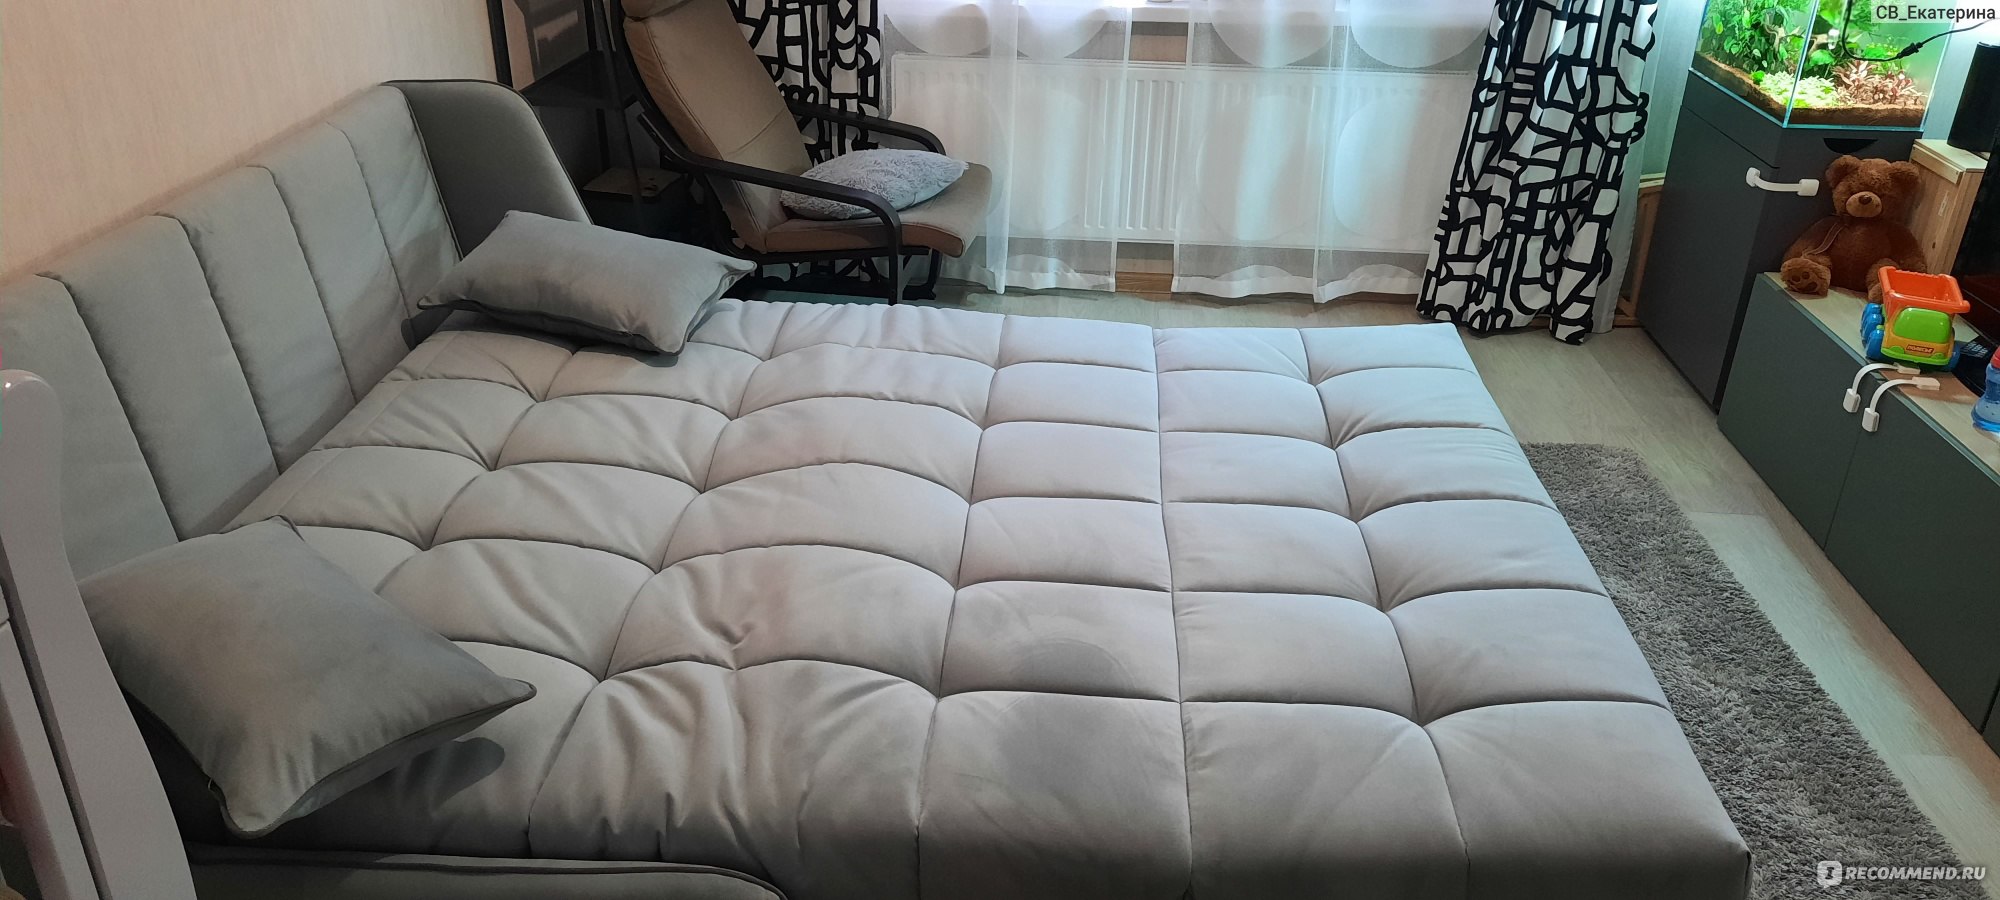 Поменять старый диван на новый